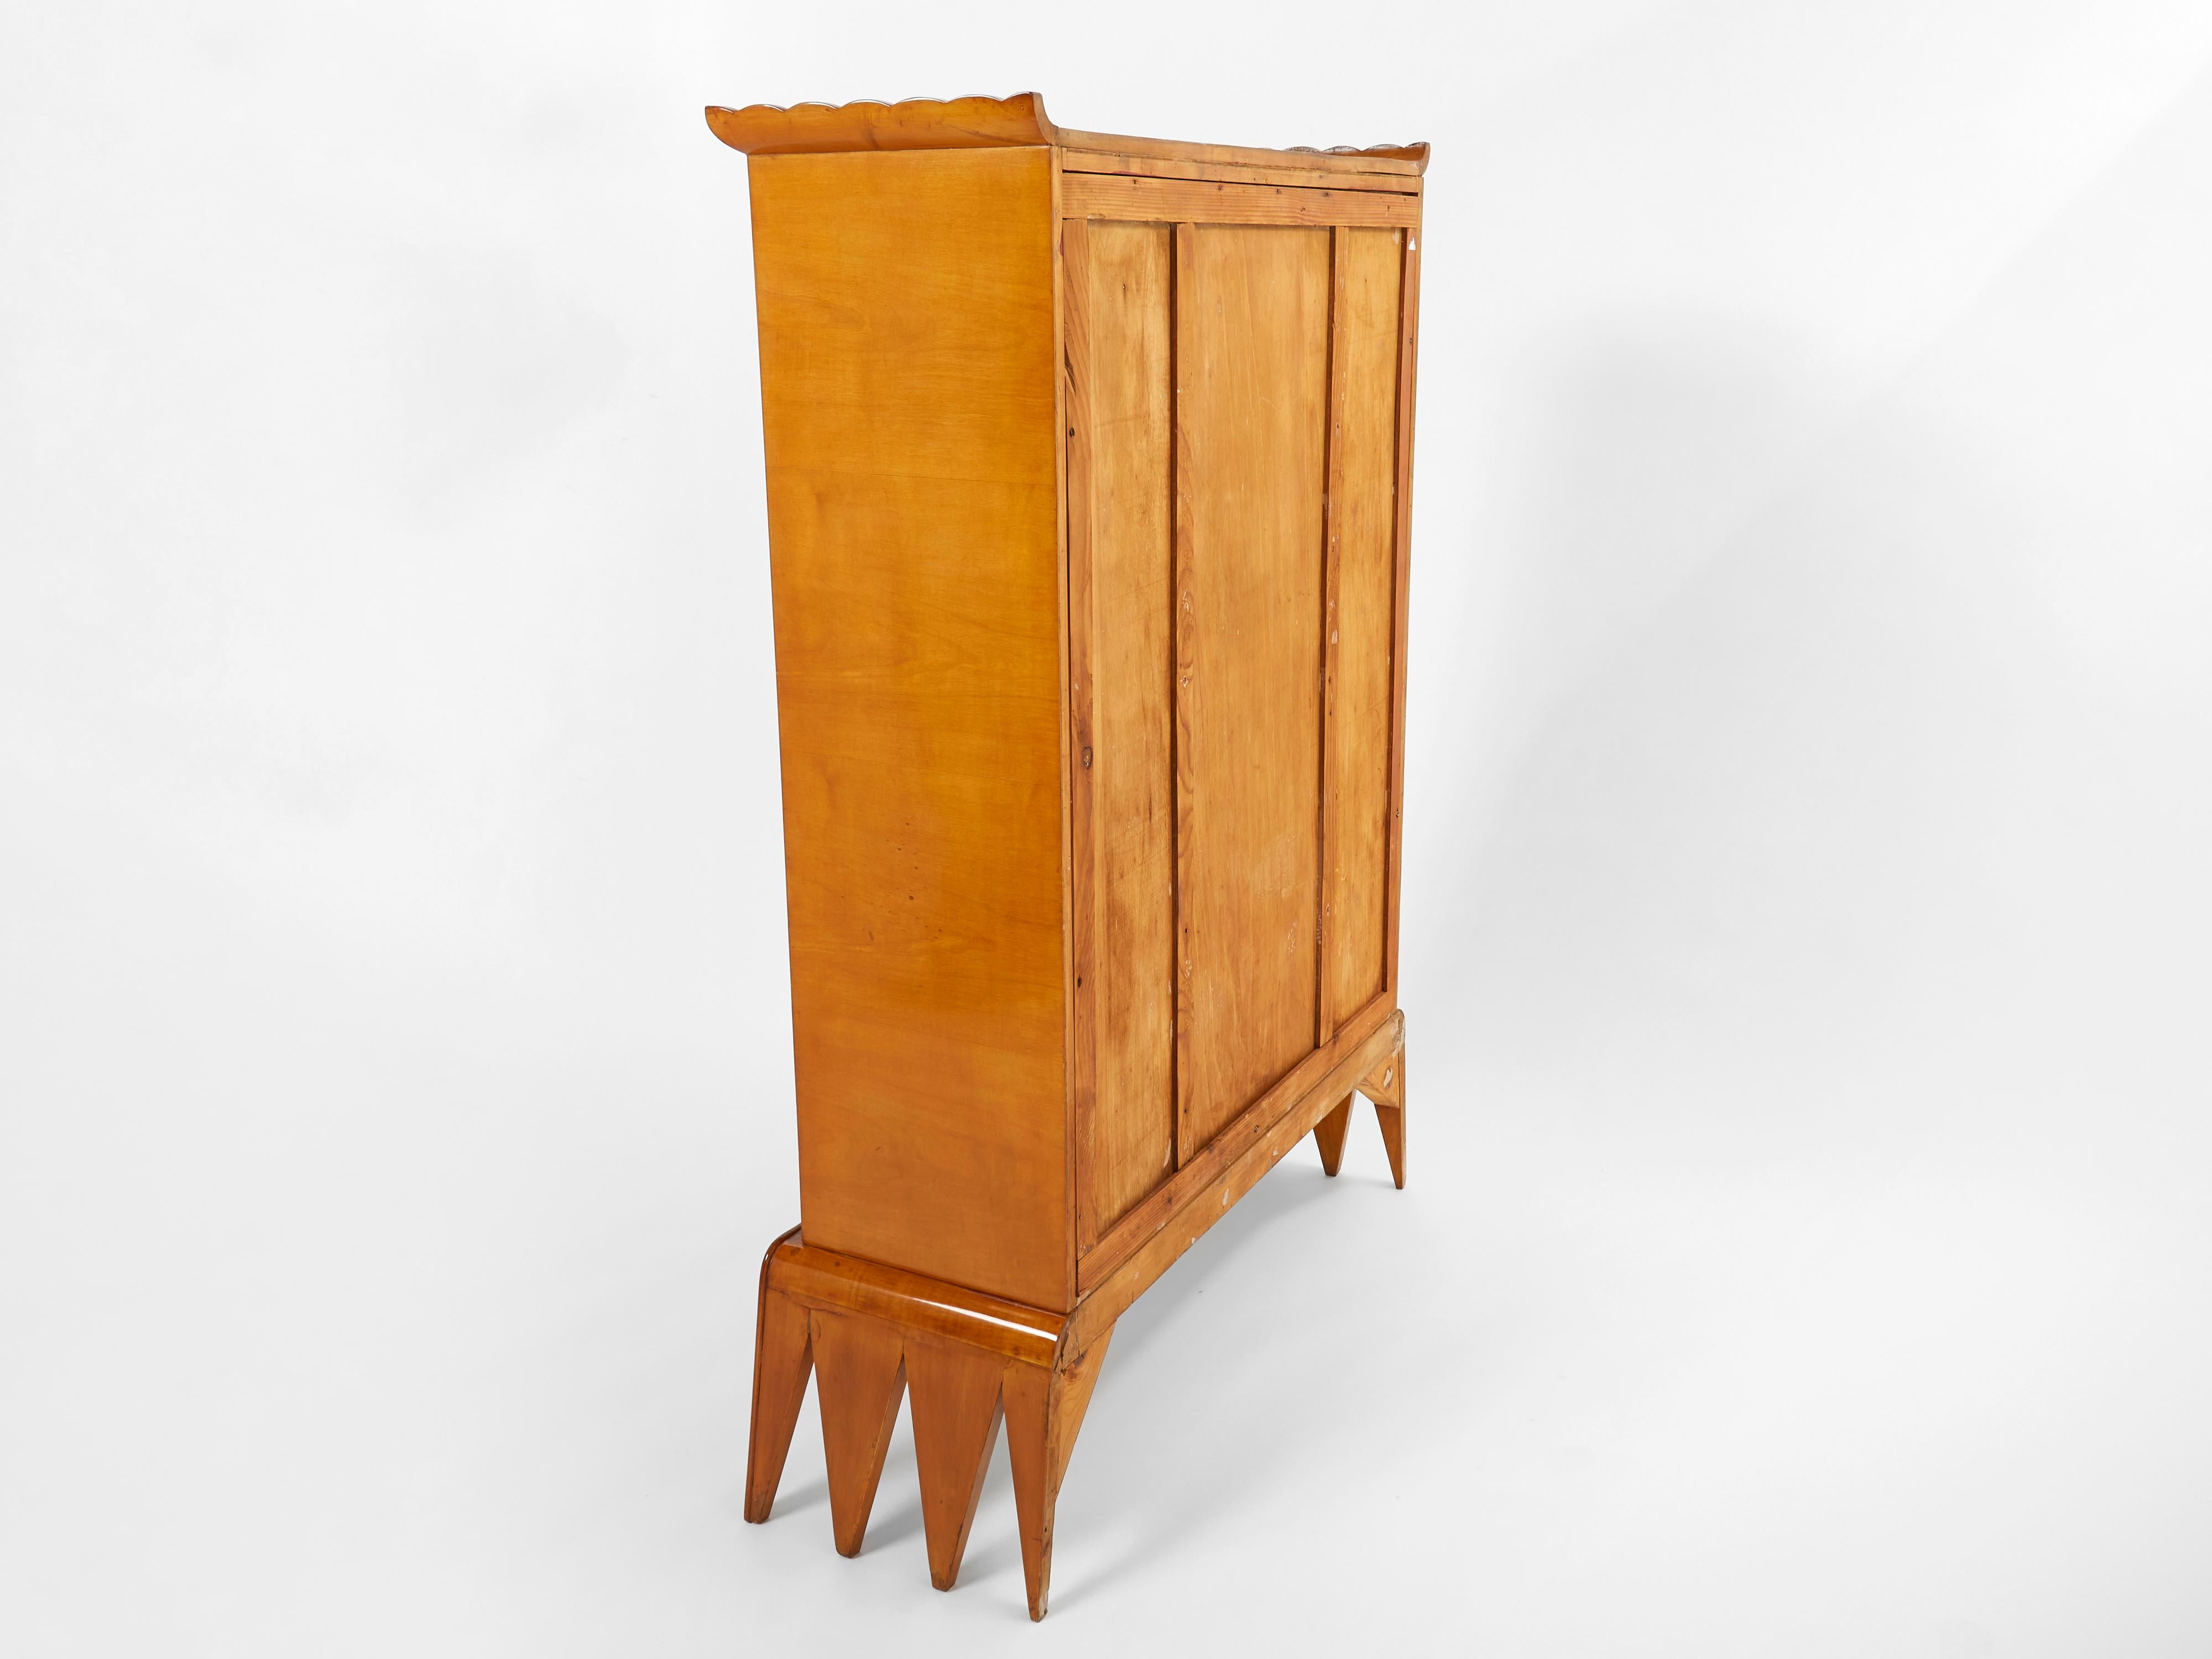 Osvaldo Borsani Cherry Wood Mirrored Bar Cabinet for Abv, 1940 For Sale 7